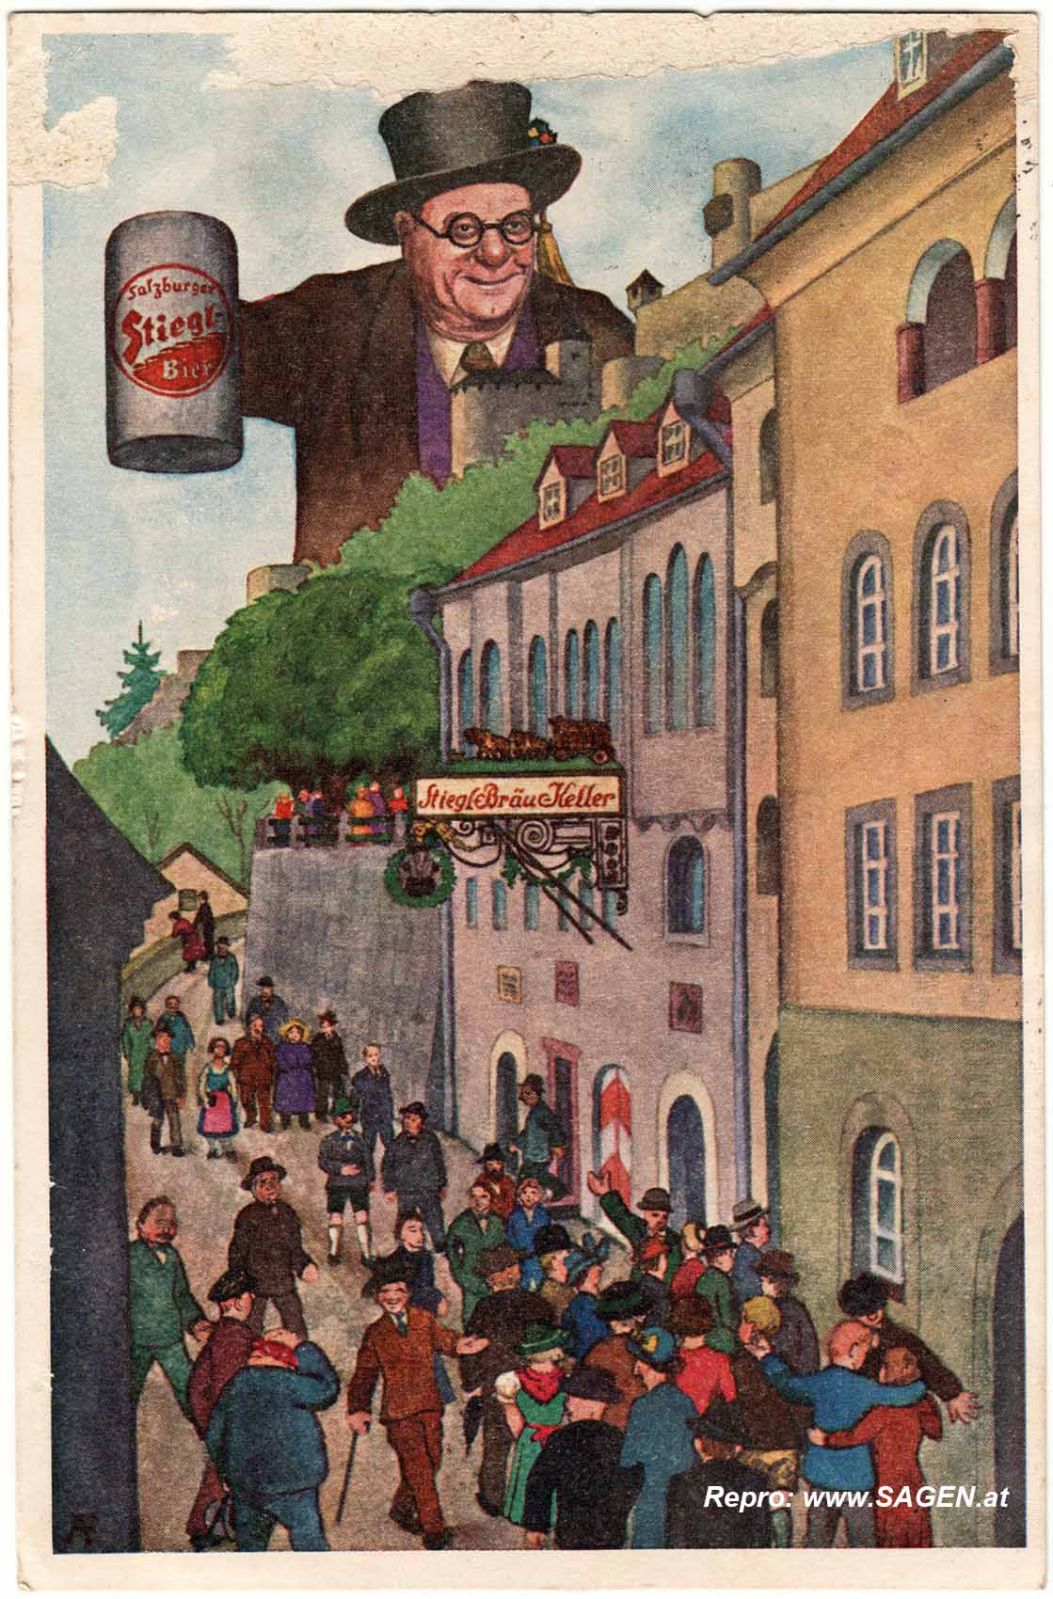 Werbung Stiegl Bräu Keller, 1930er Jahre